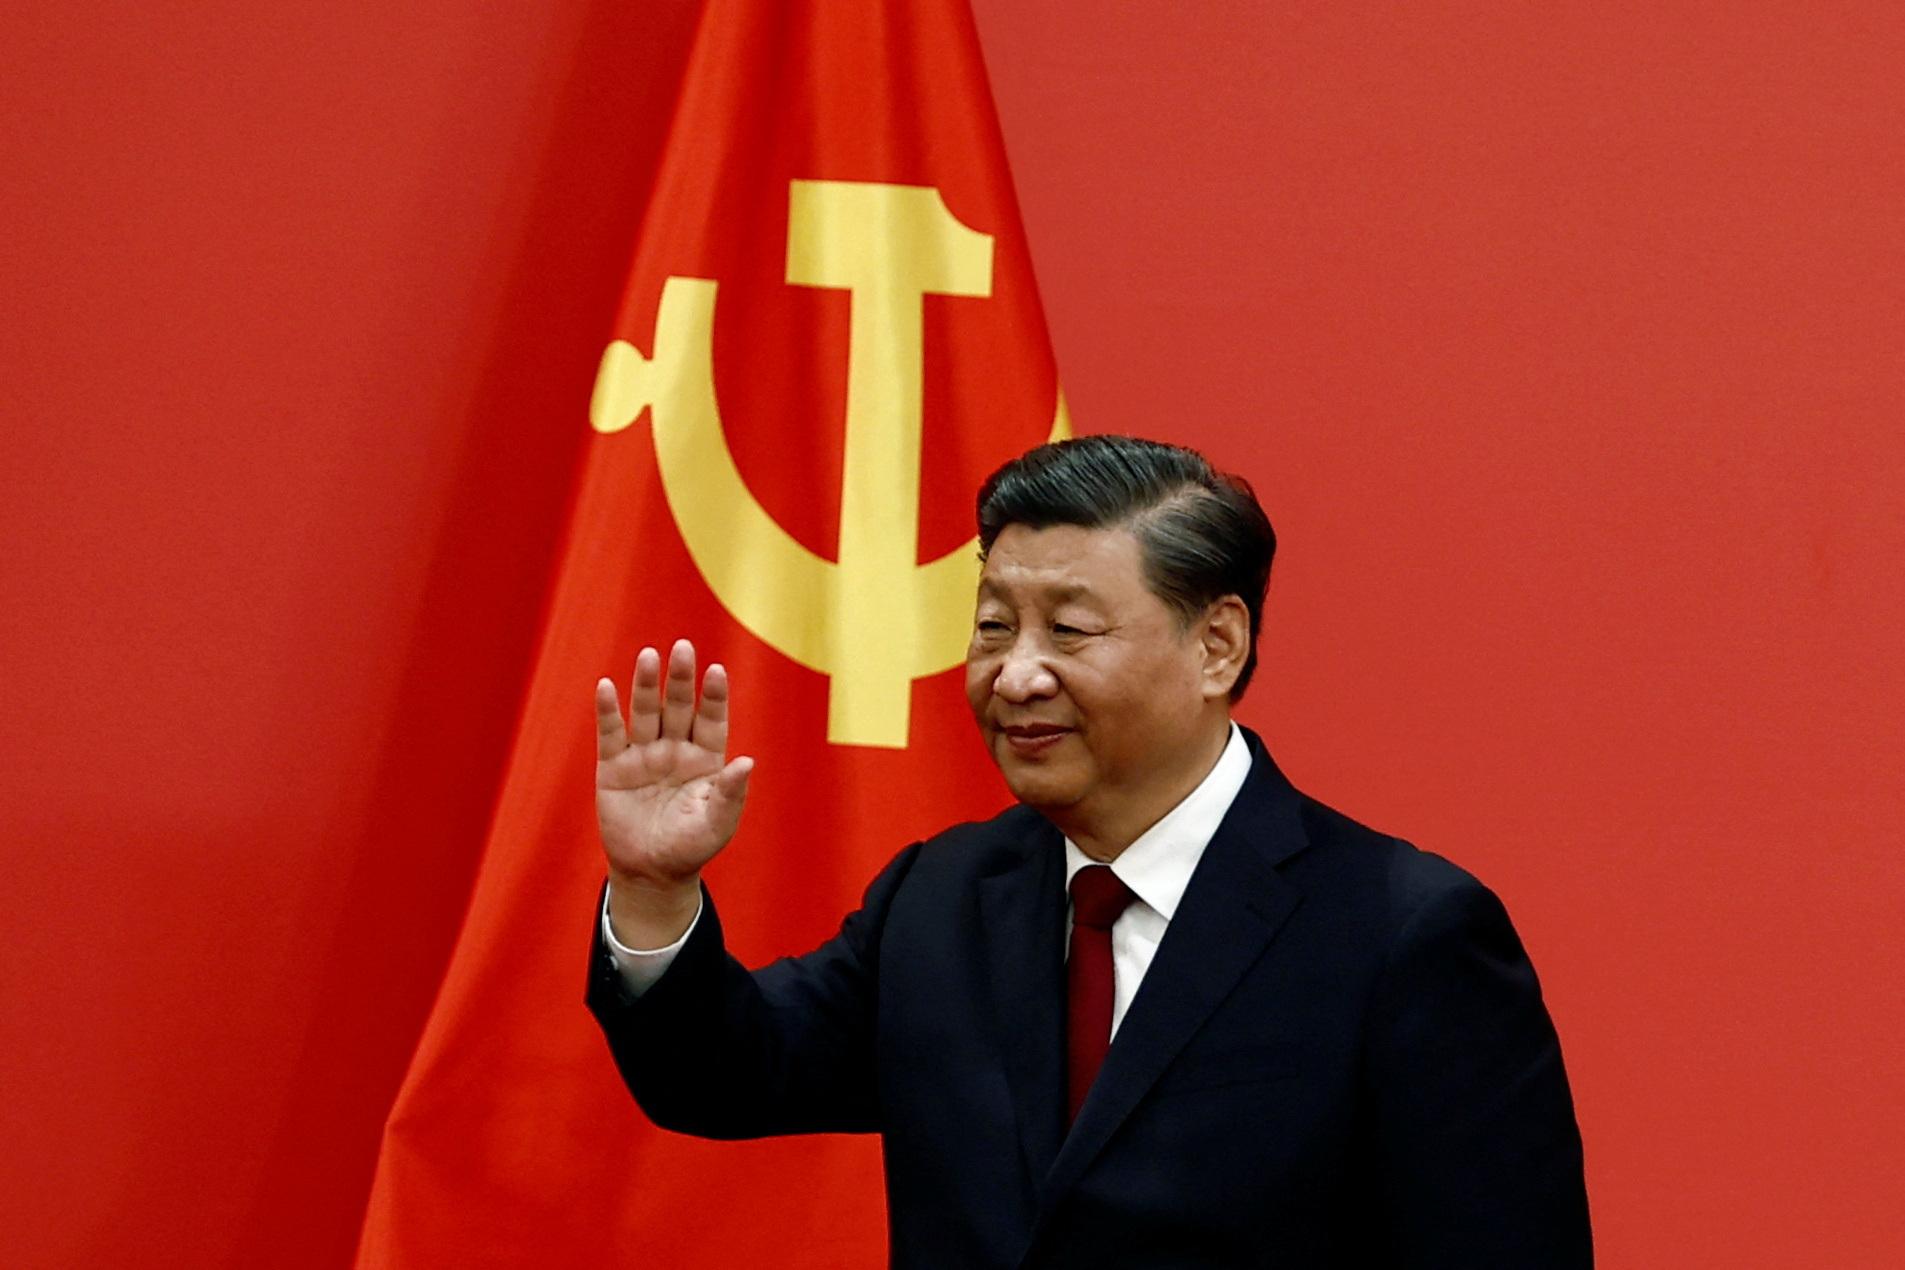 Čínsky prezident nezvyčajne priamo kritizoval USA, podľa neho bránia rozvoju Číny